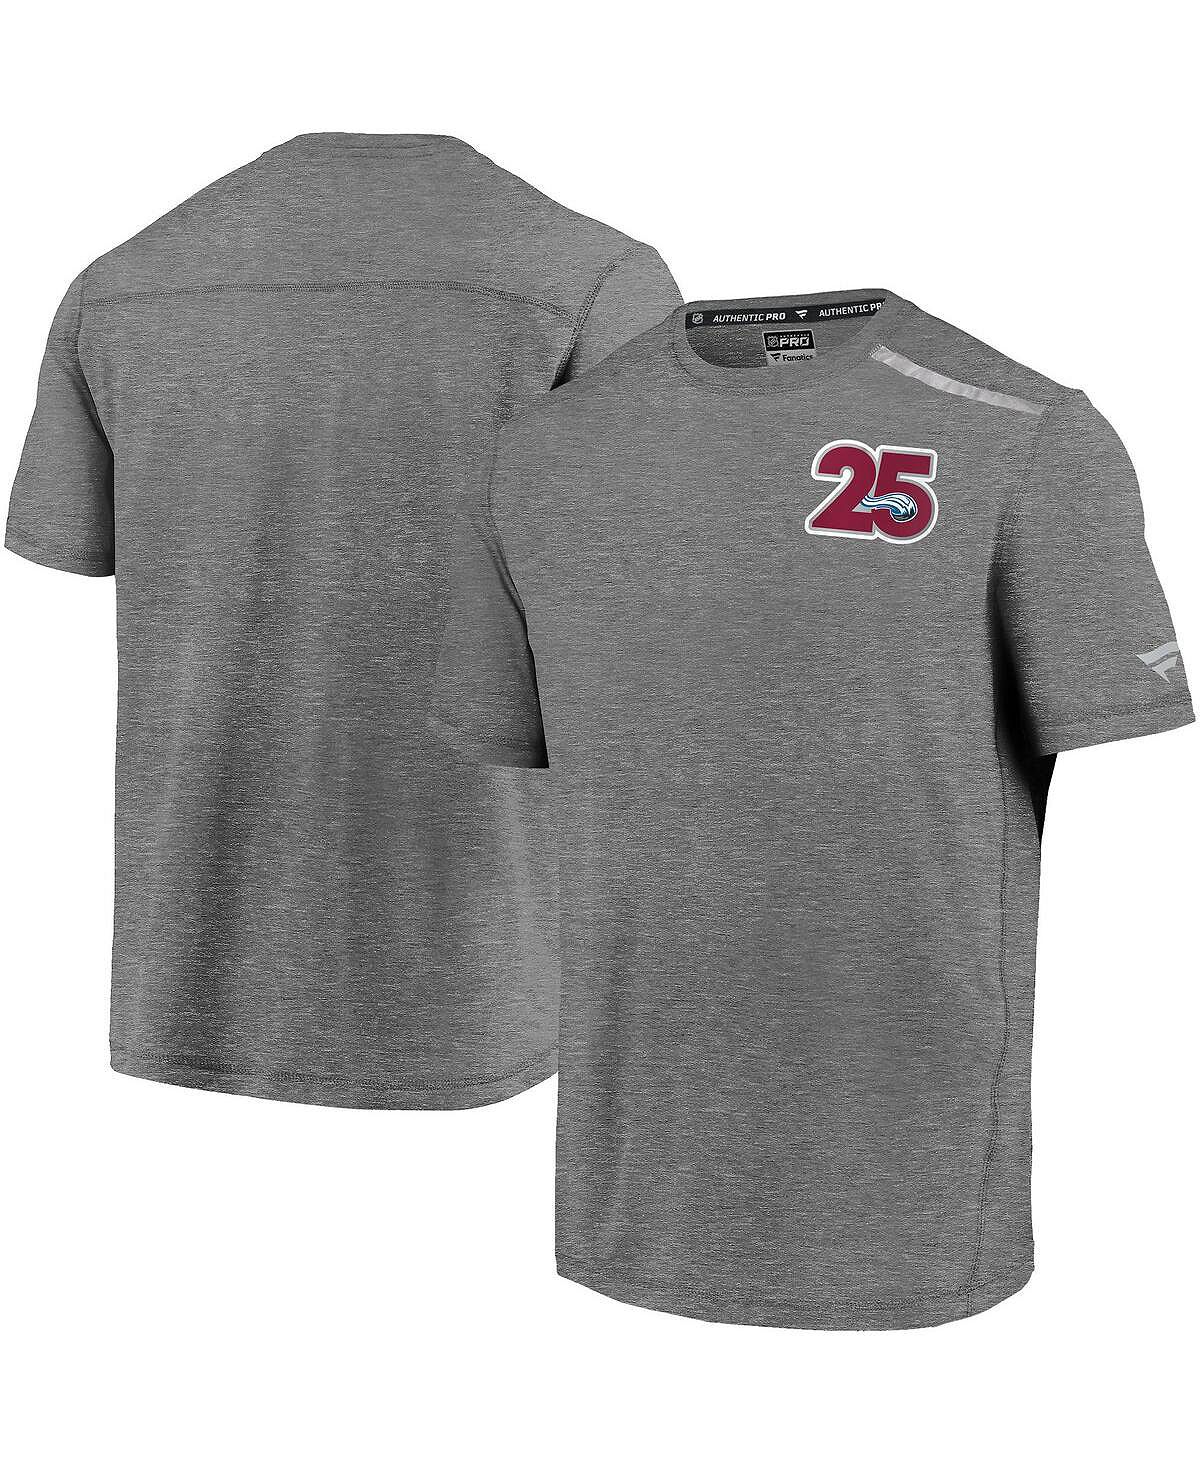 цена Мужская фирменная футболка с логотипом colorado avalanche 25th season в меланжевом цвете серого цвета Fanatics, мульти